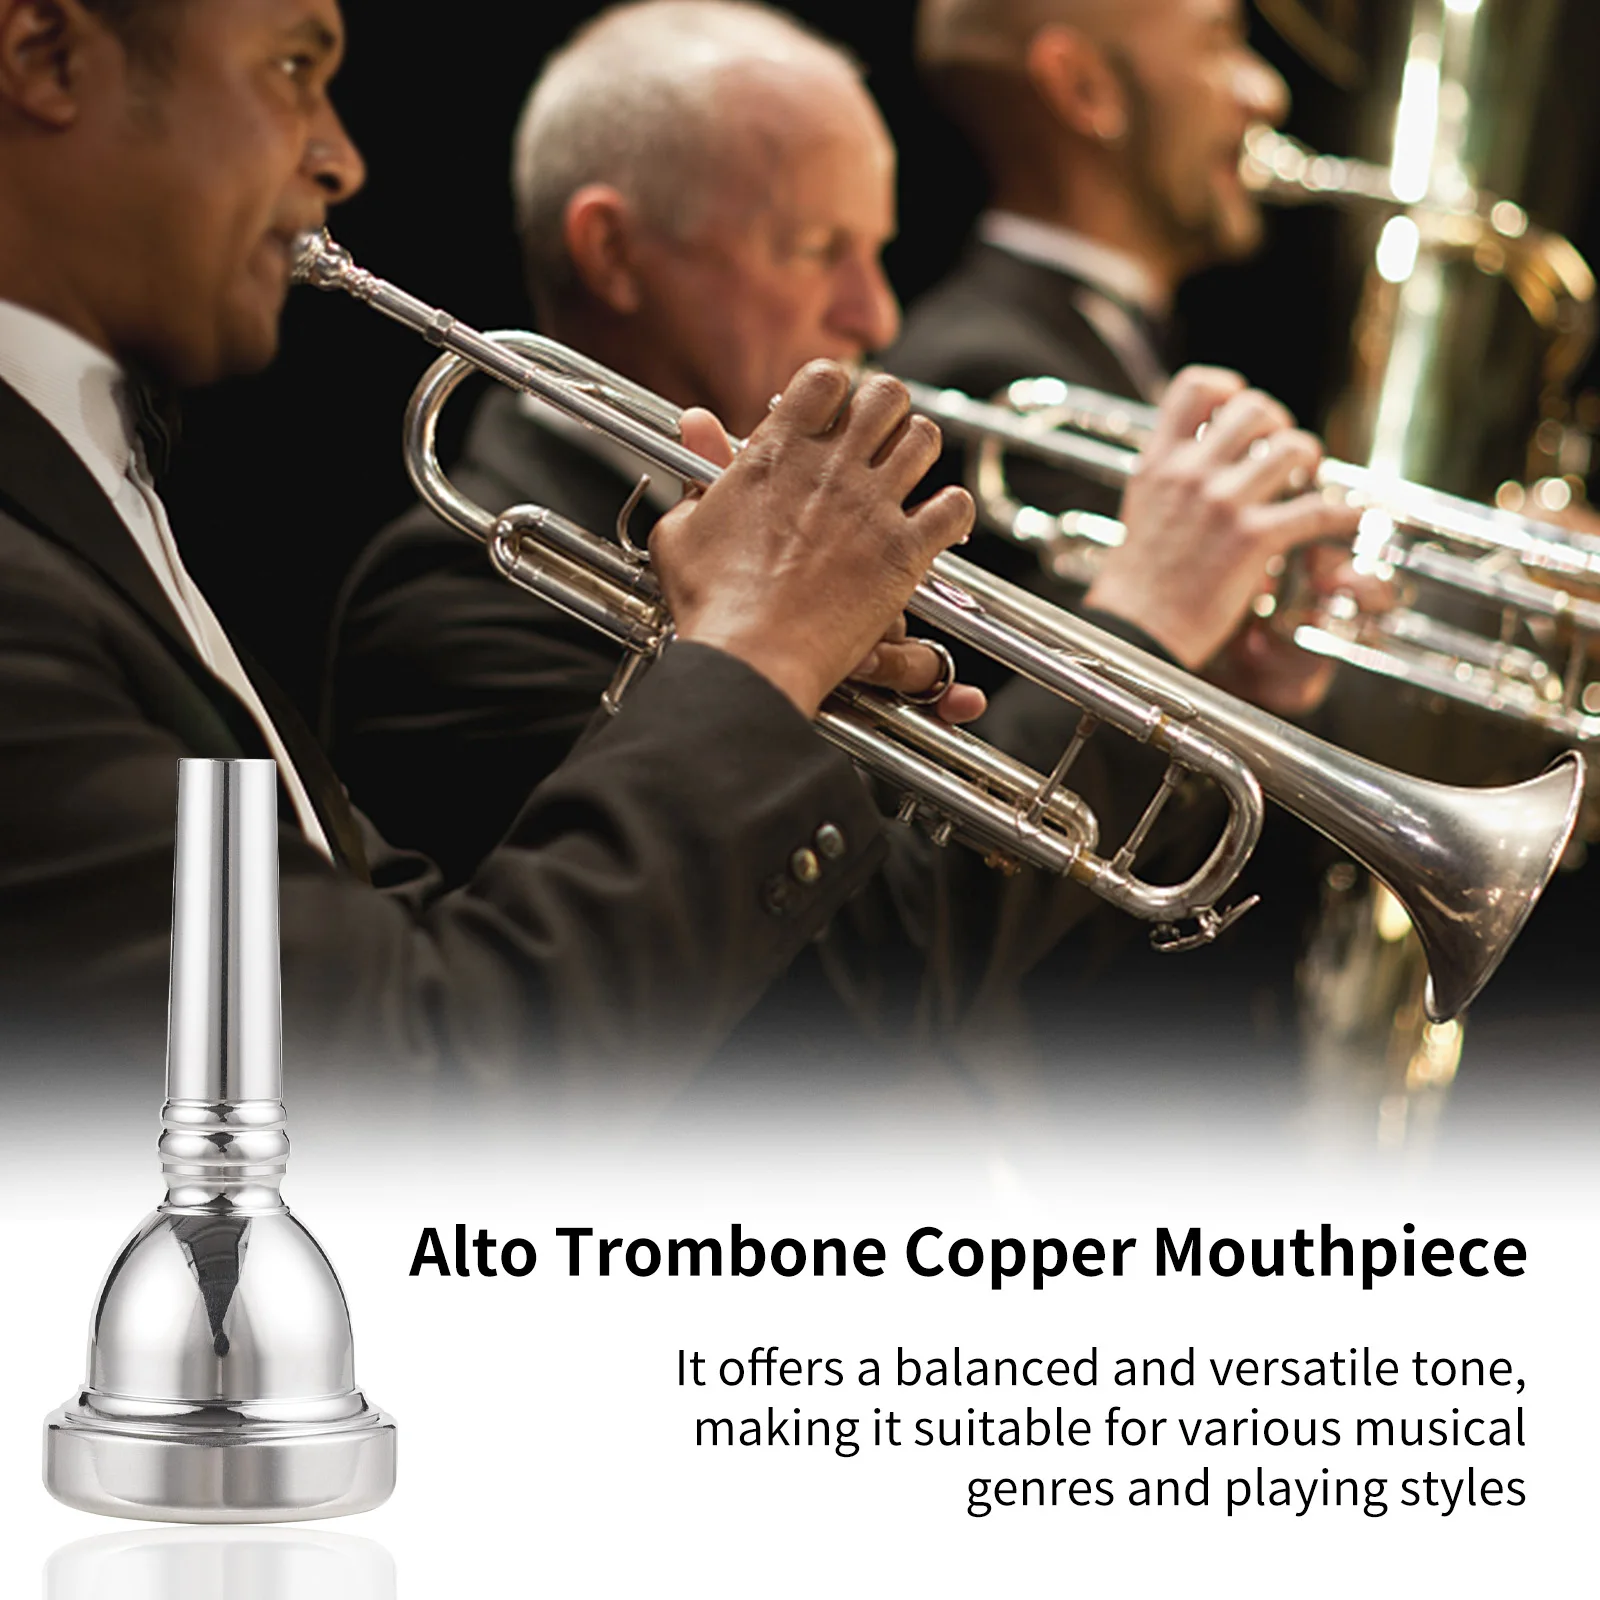 

Alto Trombone Copper Mouthpiece 6.5AL durable and sturdy